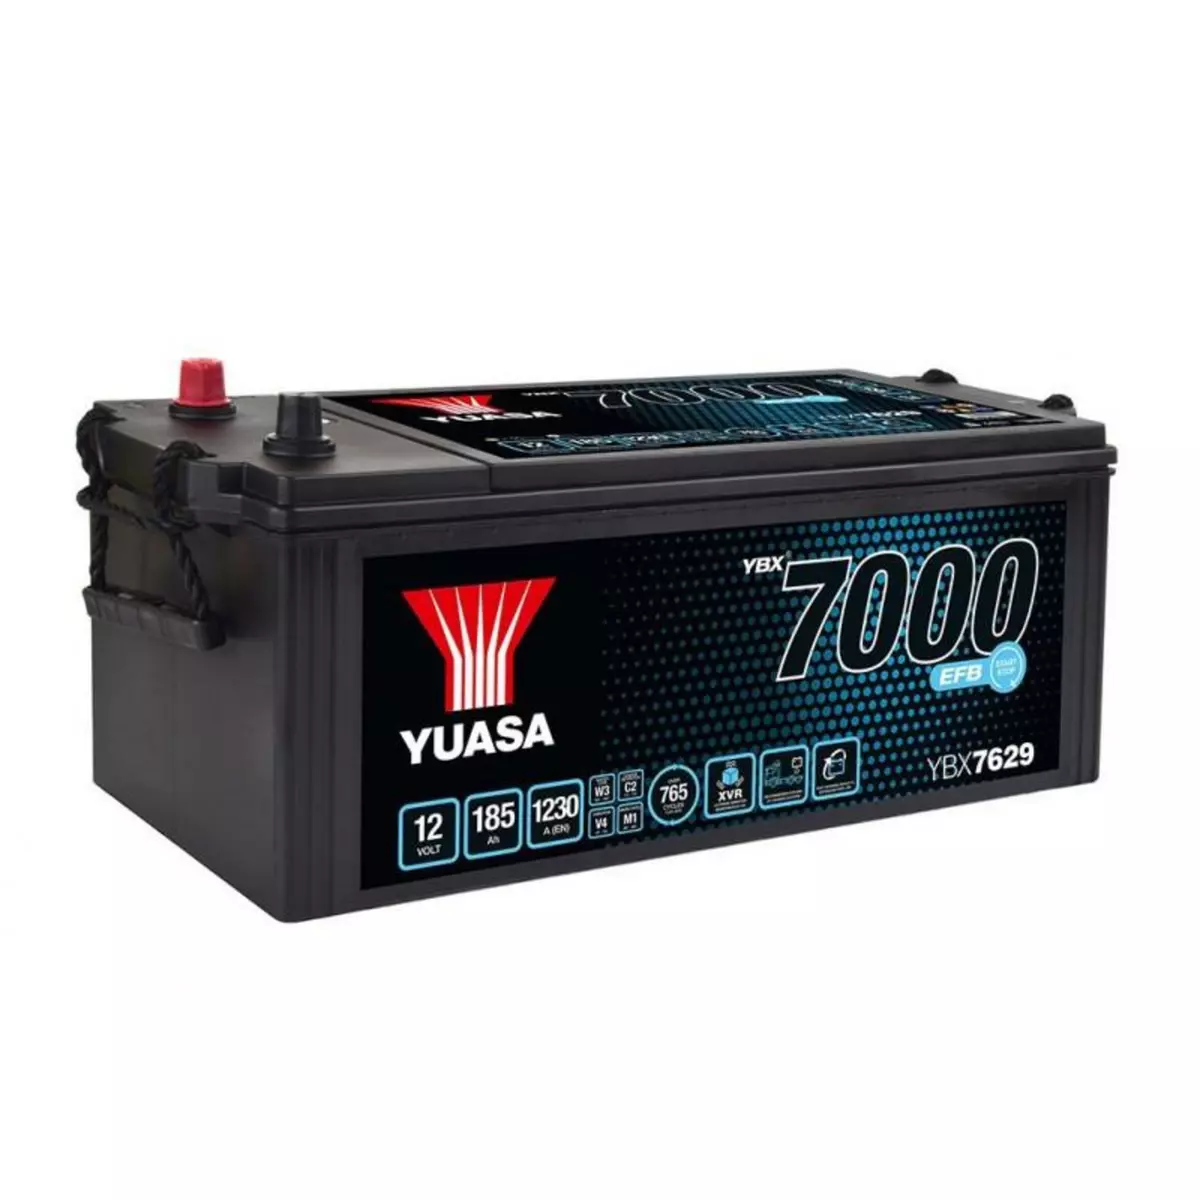 YUASA Batterie YUASA SHD EFB YBX7629 12V 185AH 1230A SMF